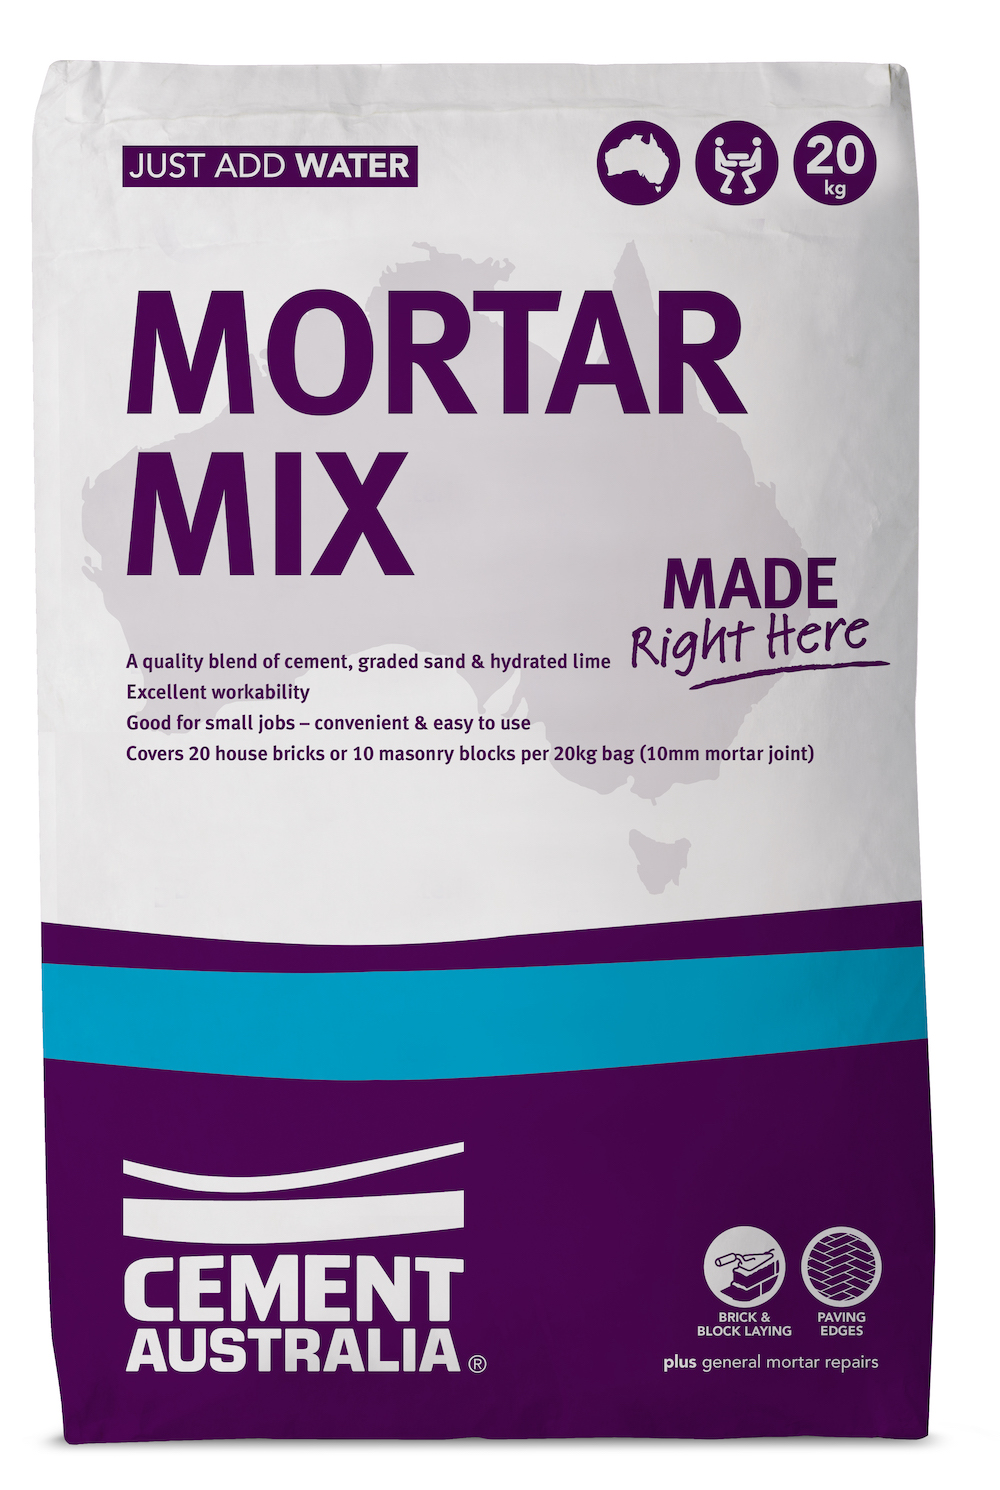 Mortar Mix $10.95 per bag